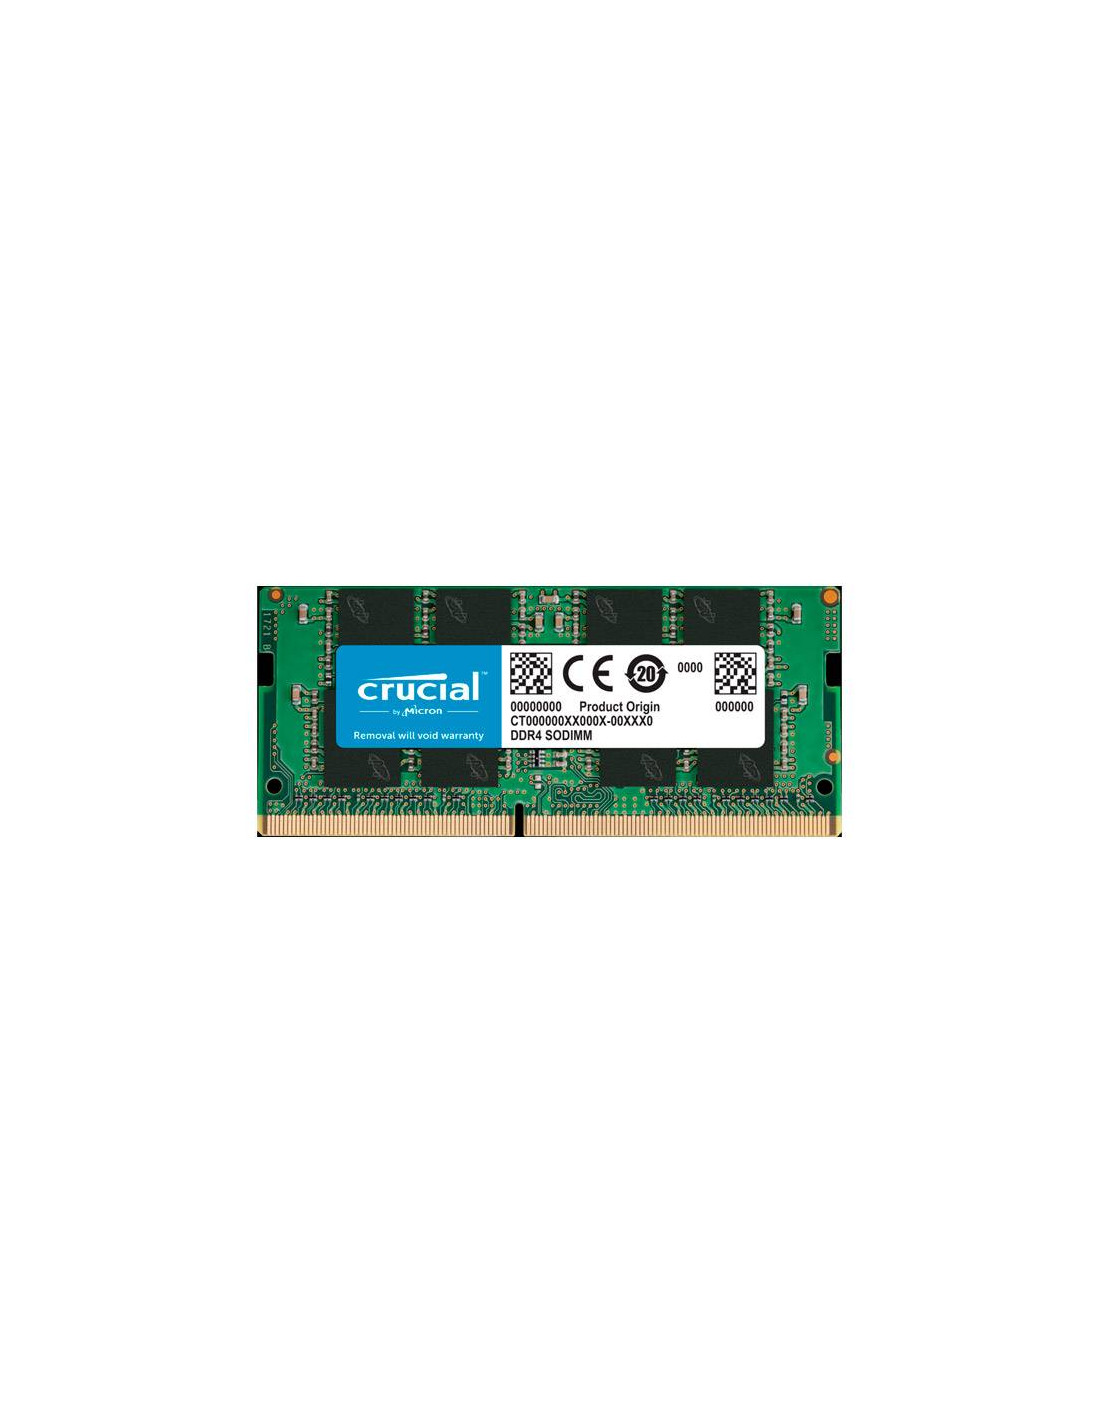 Crucial 8GB DDR4 2400 SODIMM CT8G4SFS824A - RAM